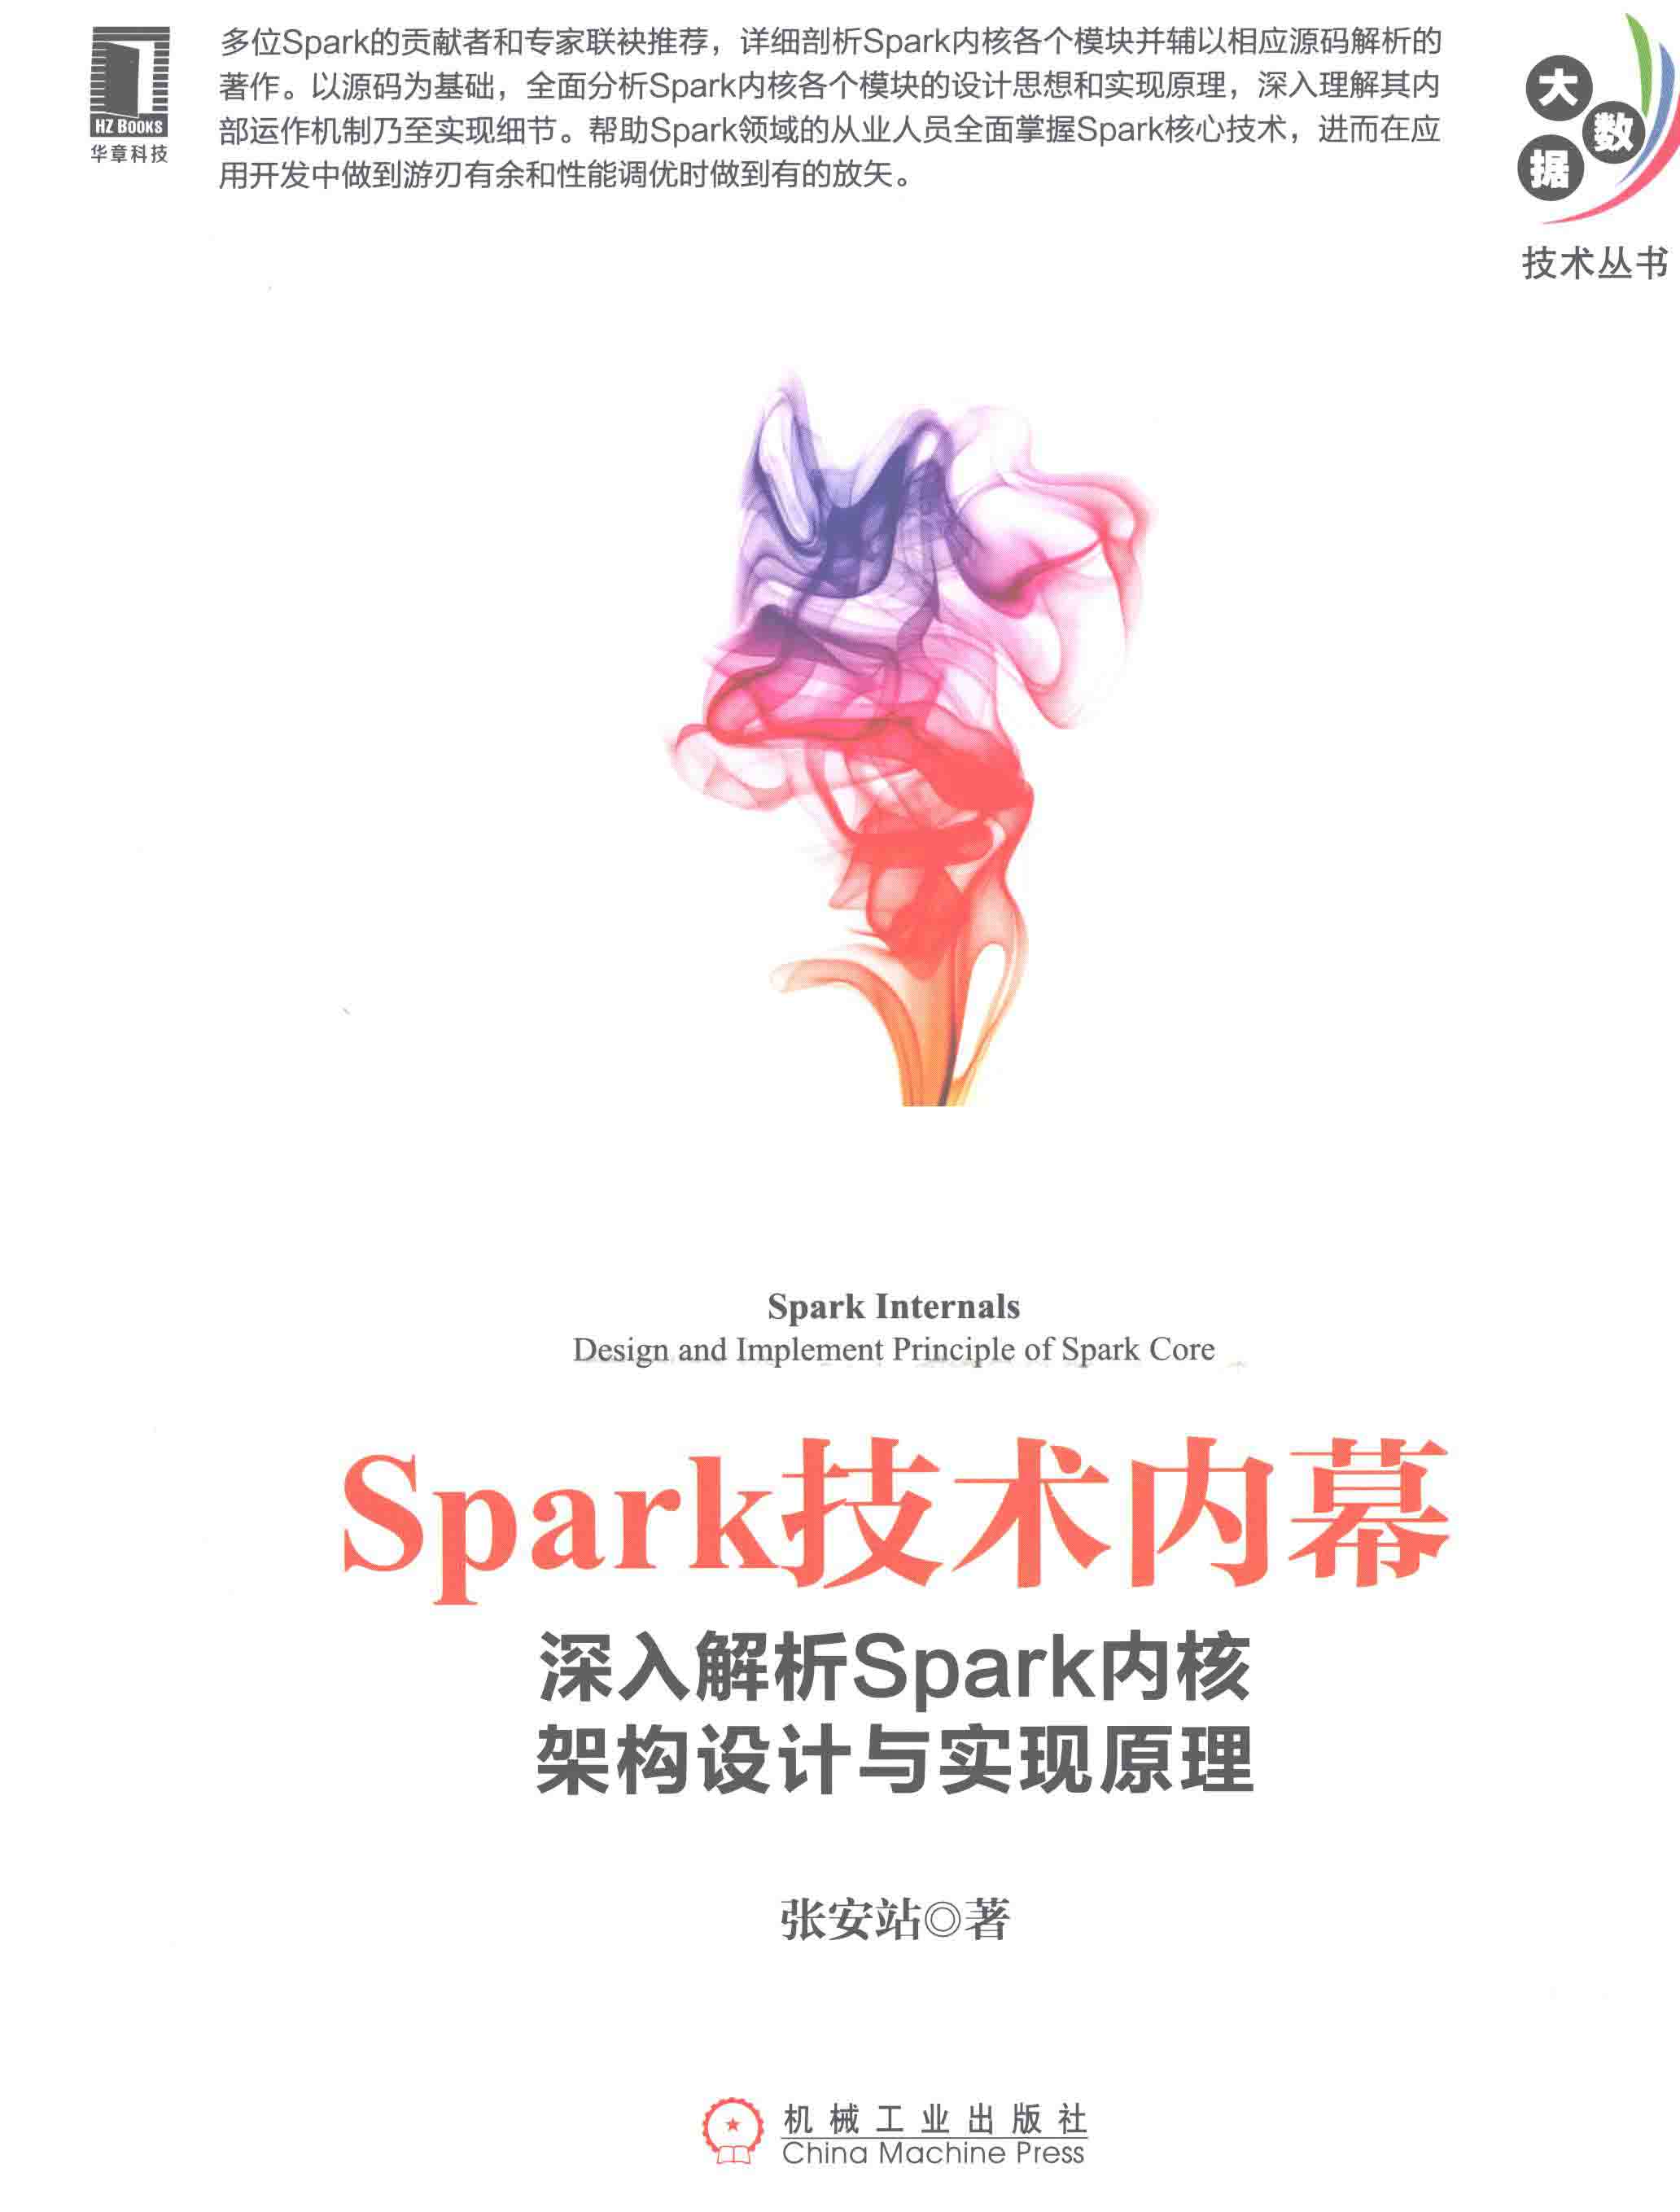 深入解析Spark内核架构设计与实现原理 PDF下载